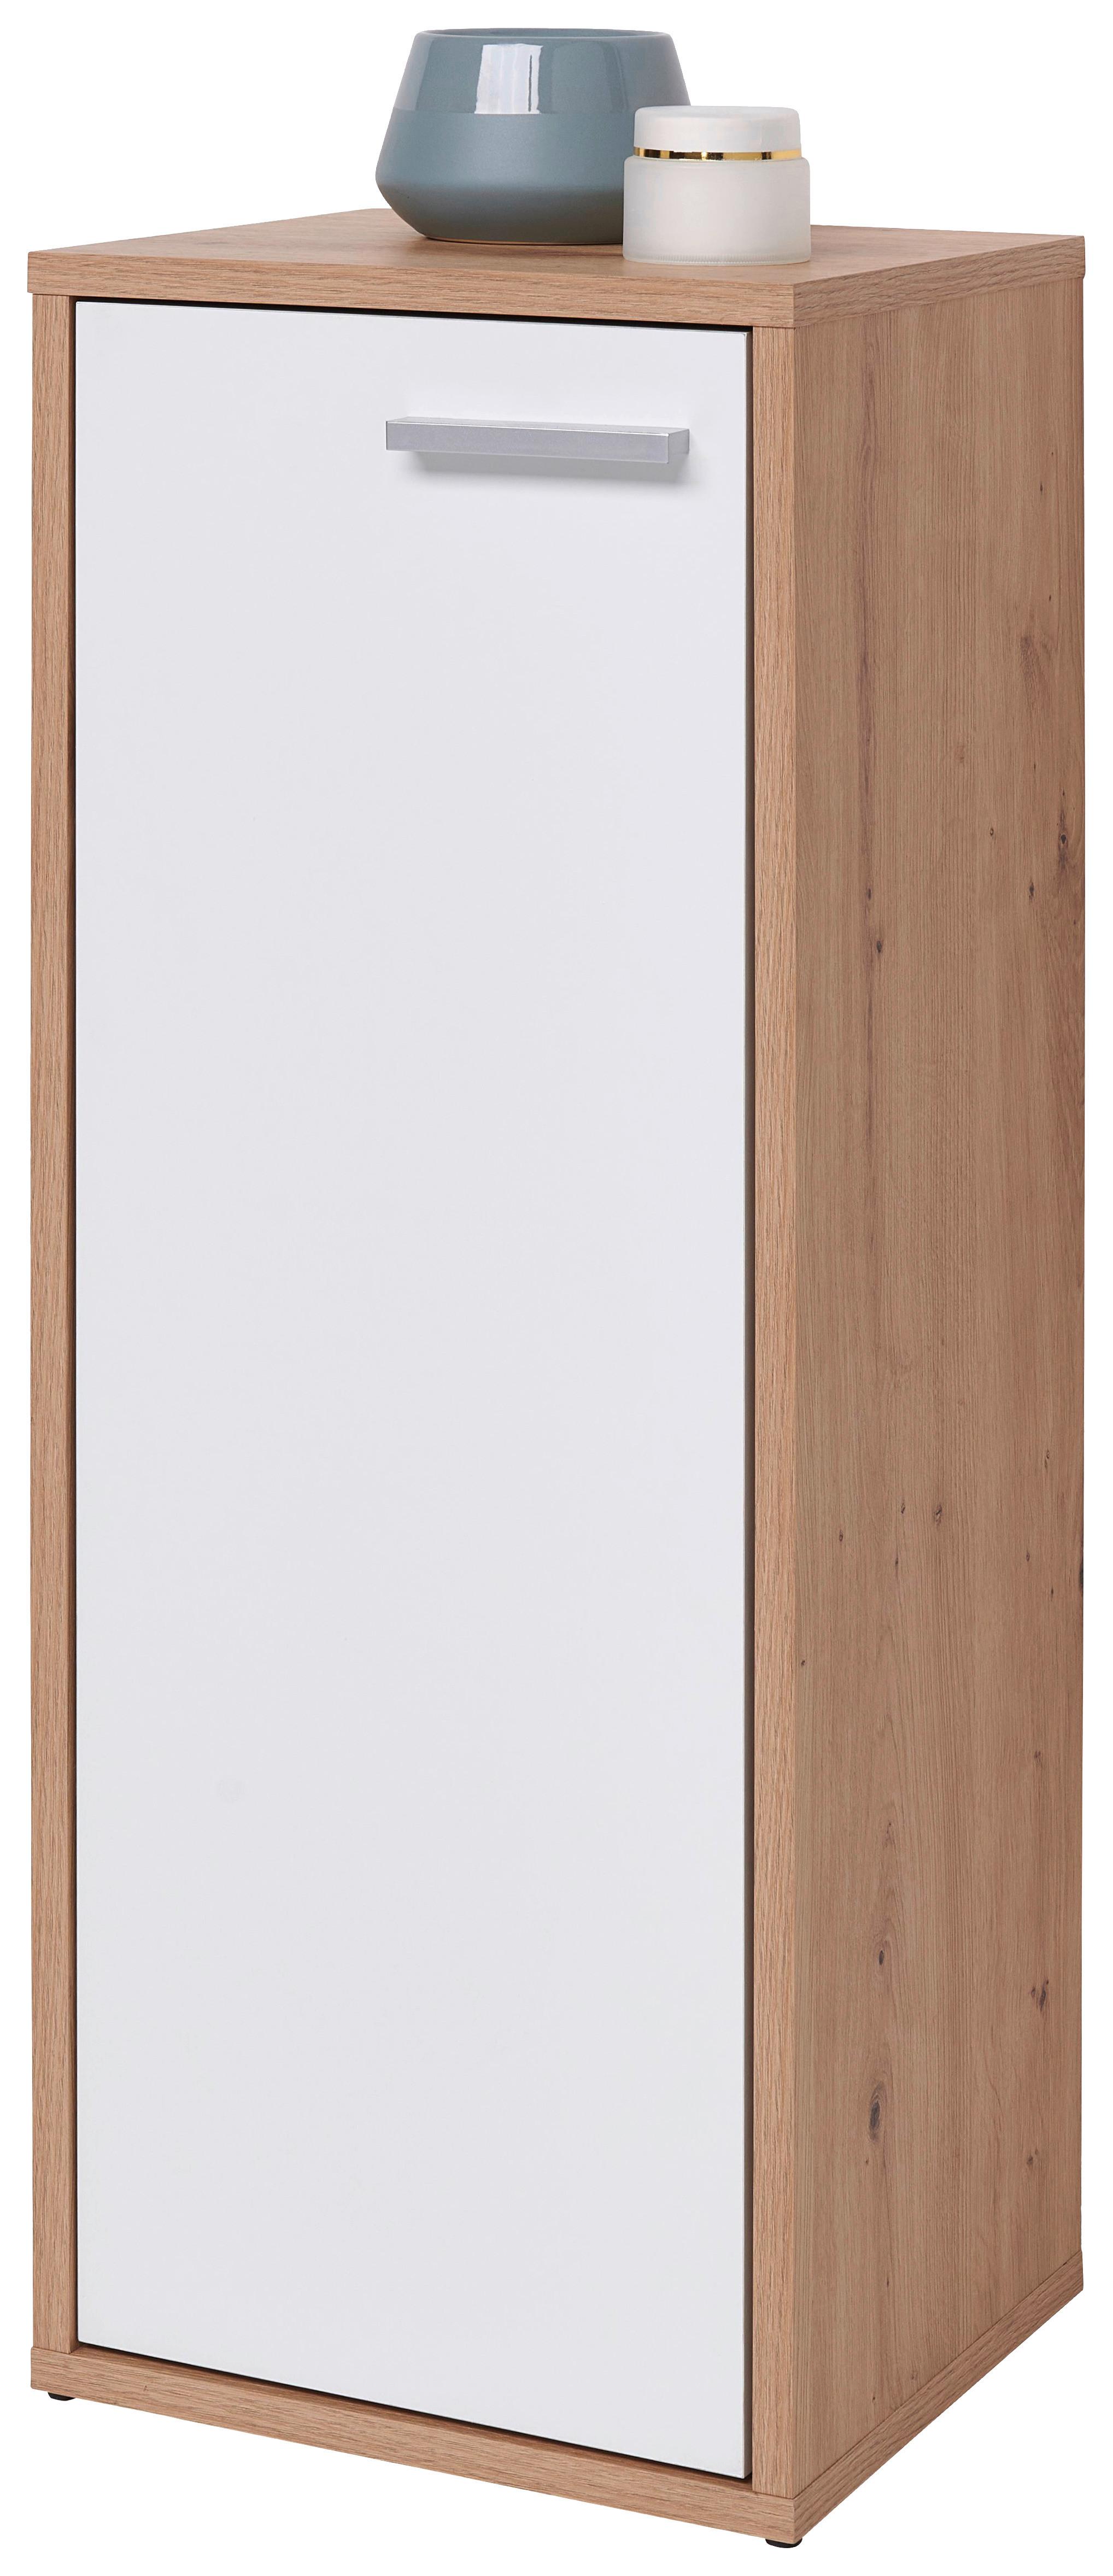 Spodnja Omarica Bodo, Bela, Hrast - Konvencionalno, umetna masa/leseni material (32/83/28cm) - Modern Living